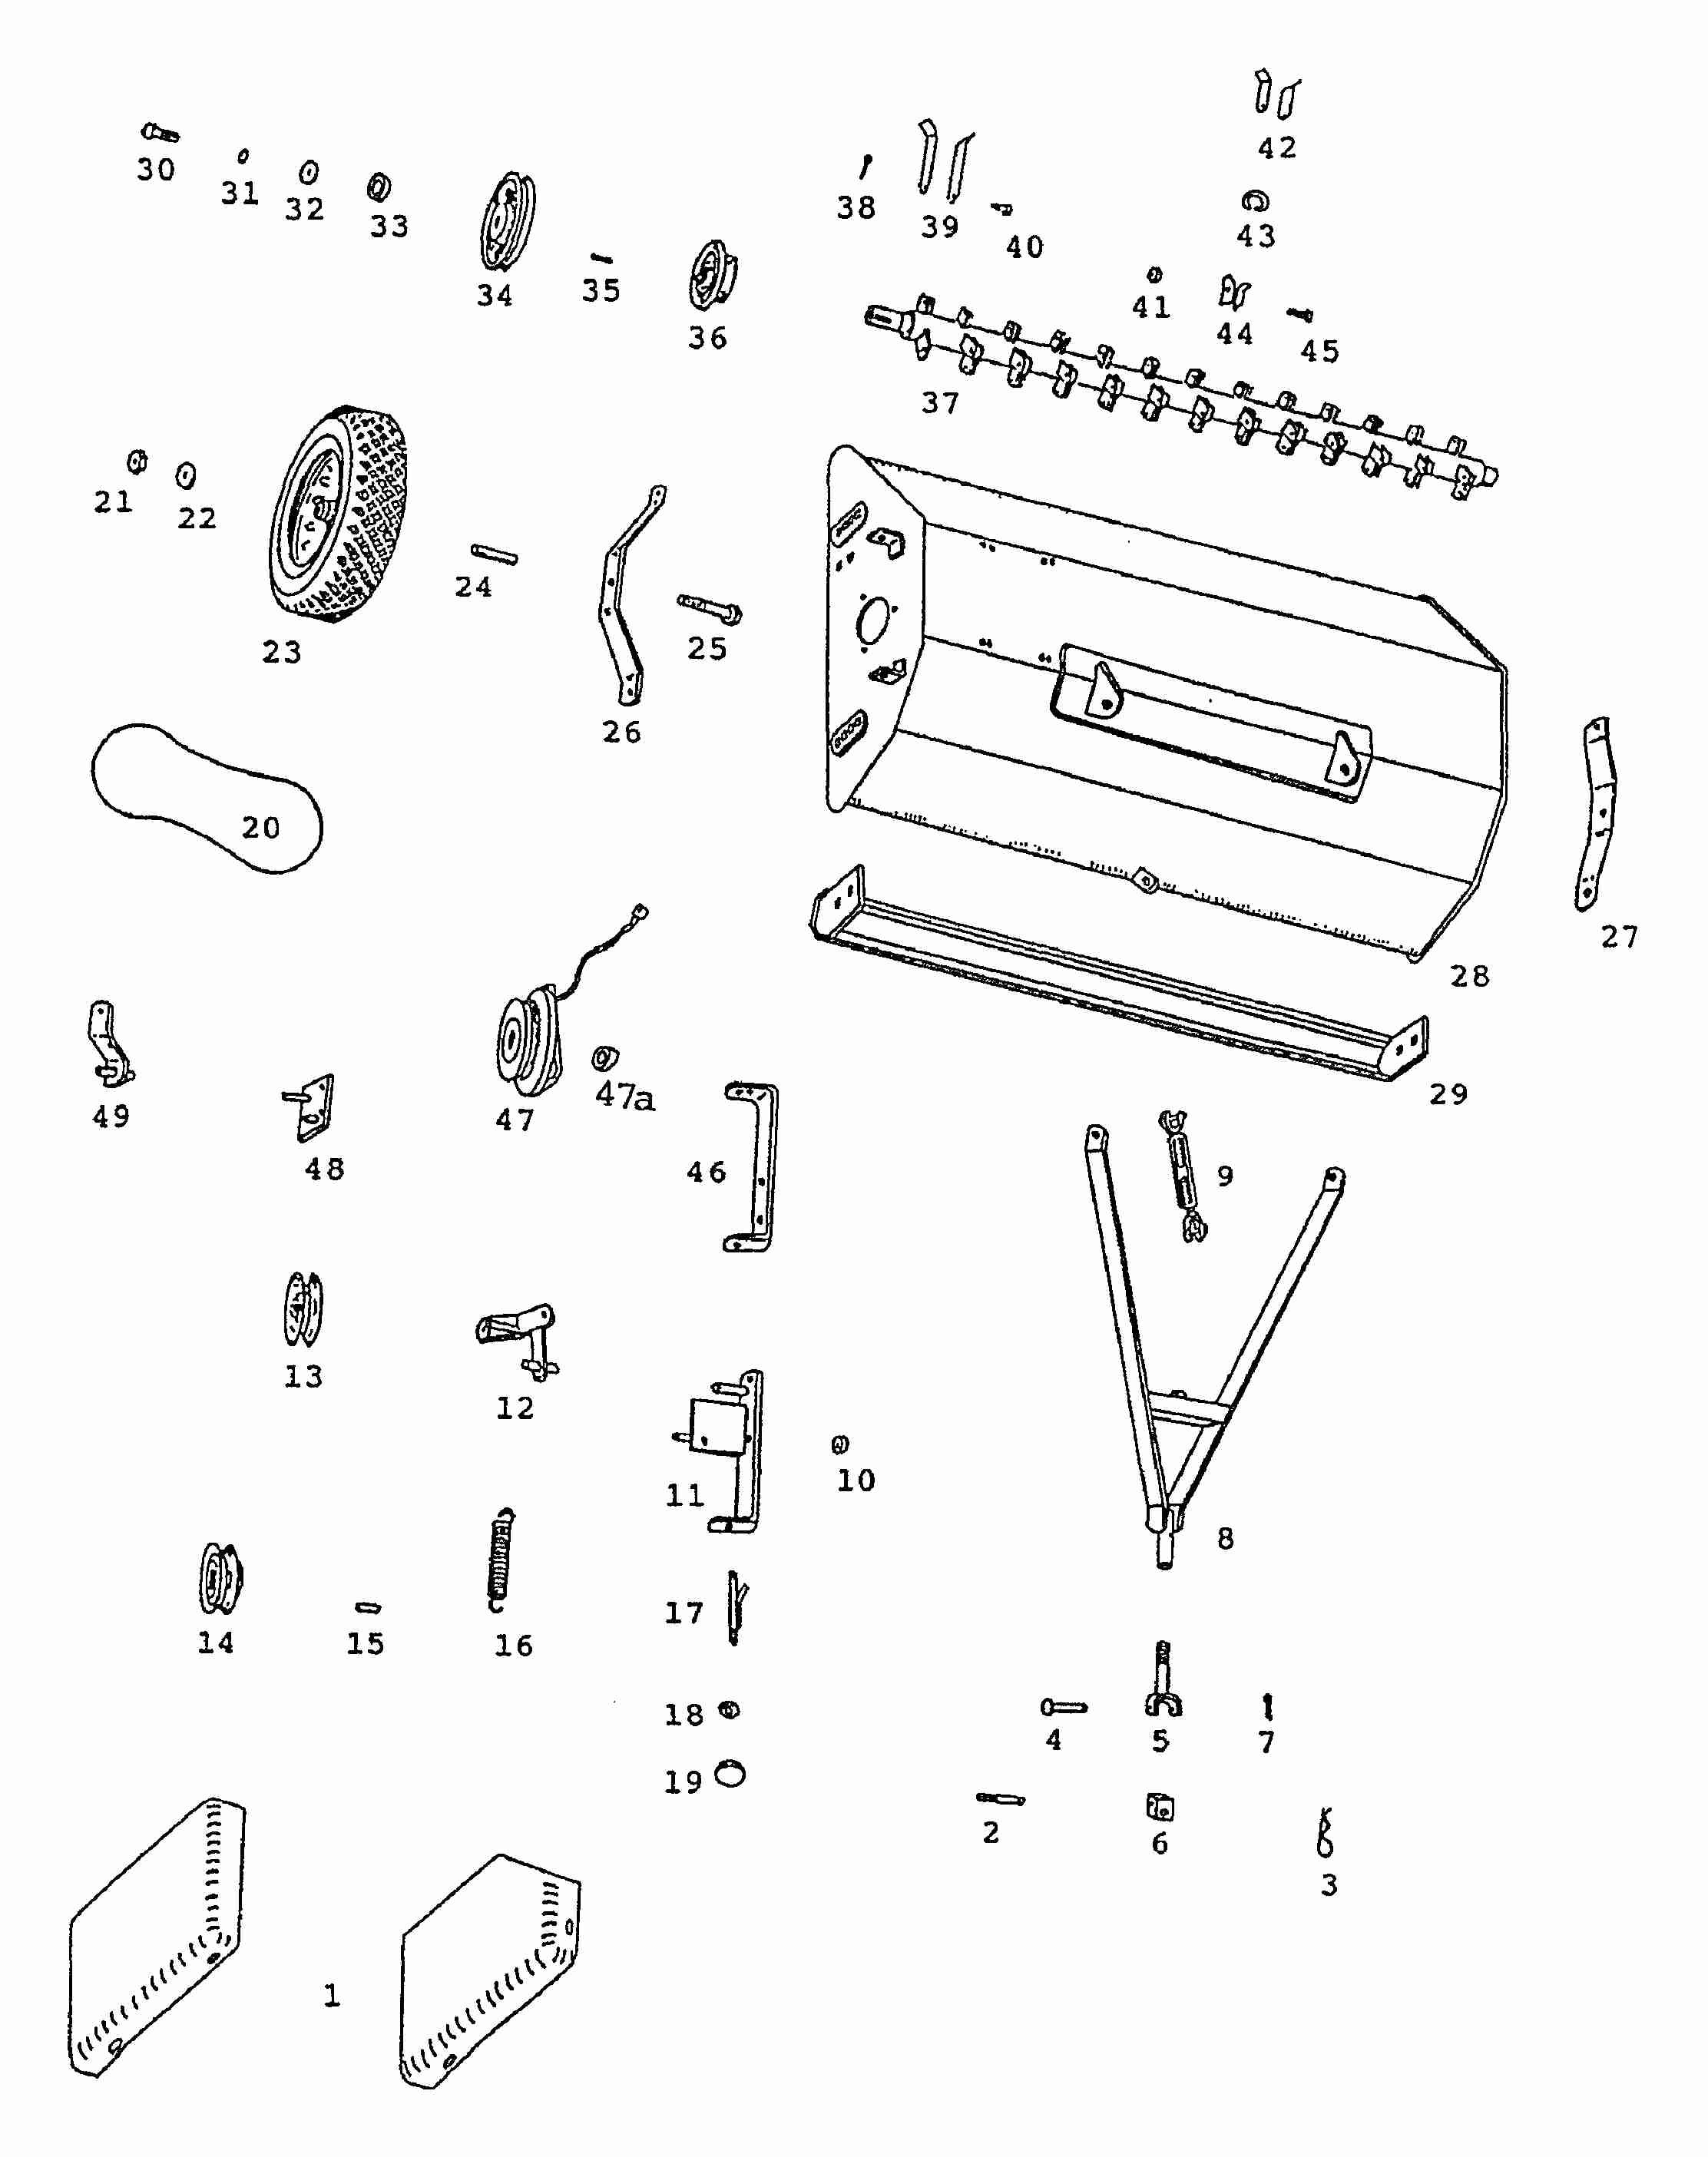 Honda Mower Parts Diagram Servis Rhino Pf48 Flail Mower Parts Listing Parts Of Honda Mower Parts Diagram